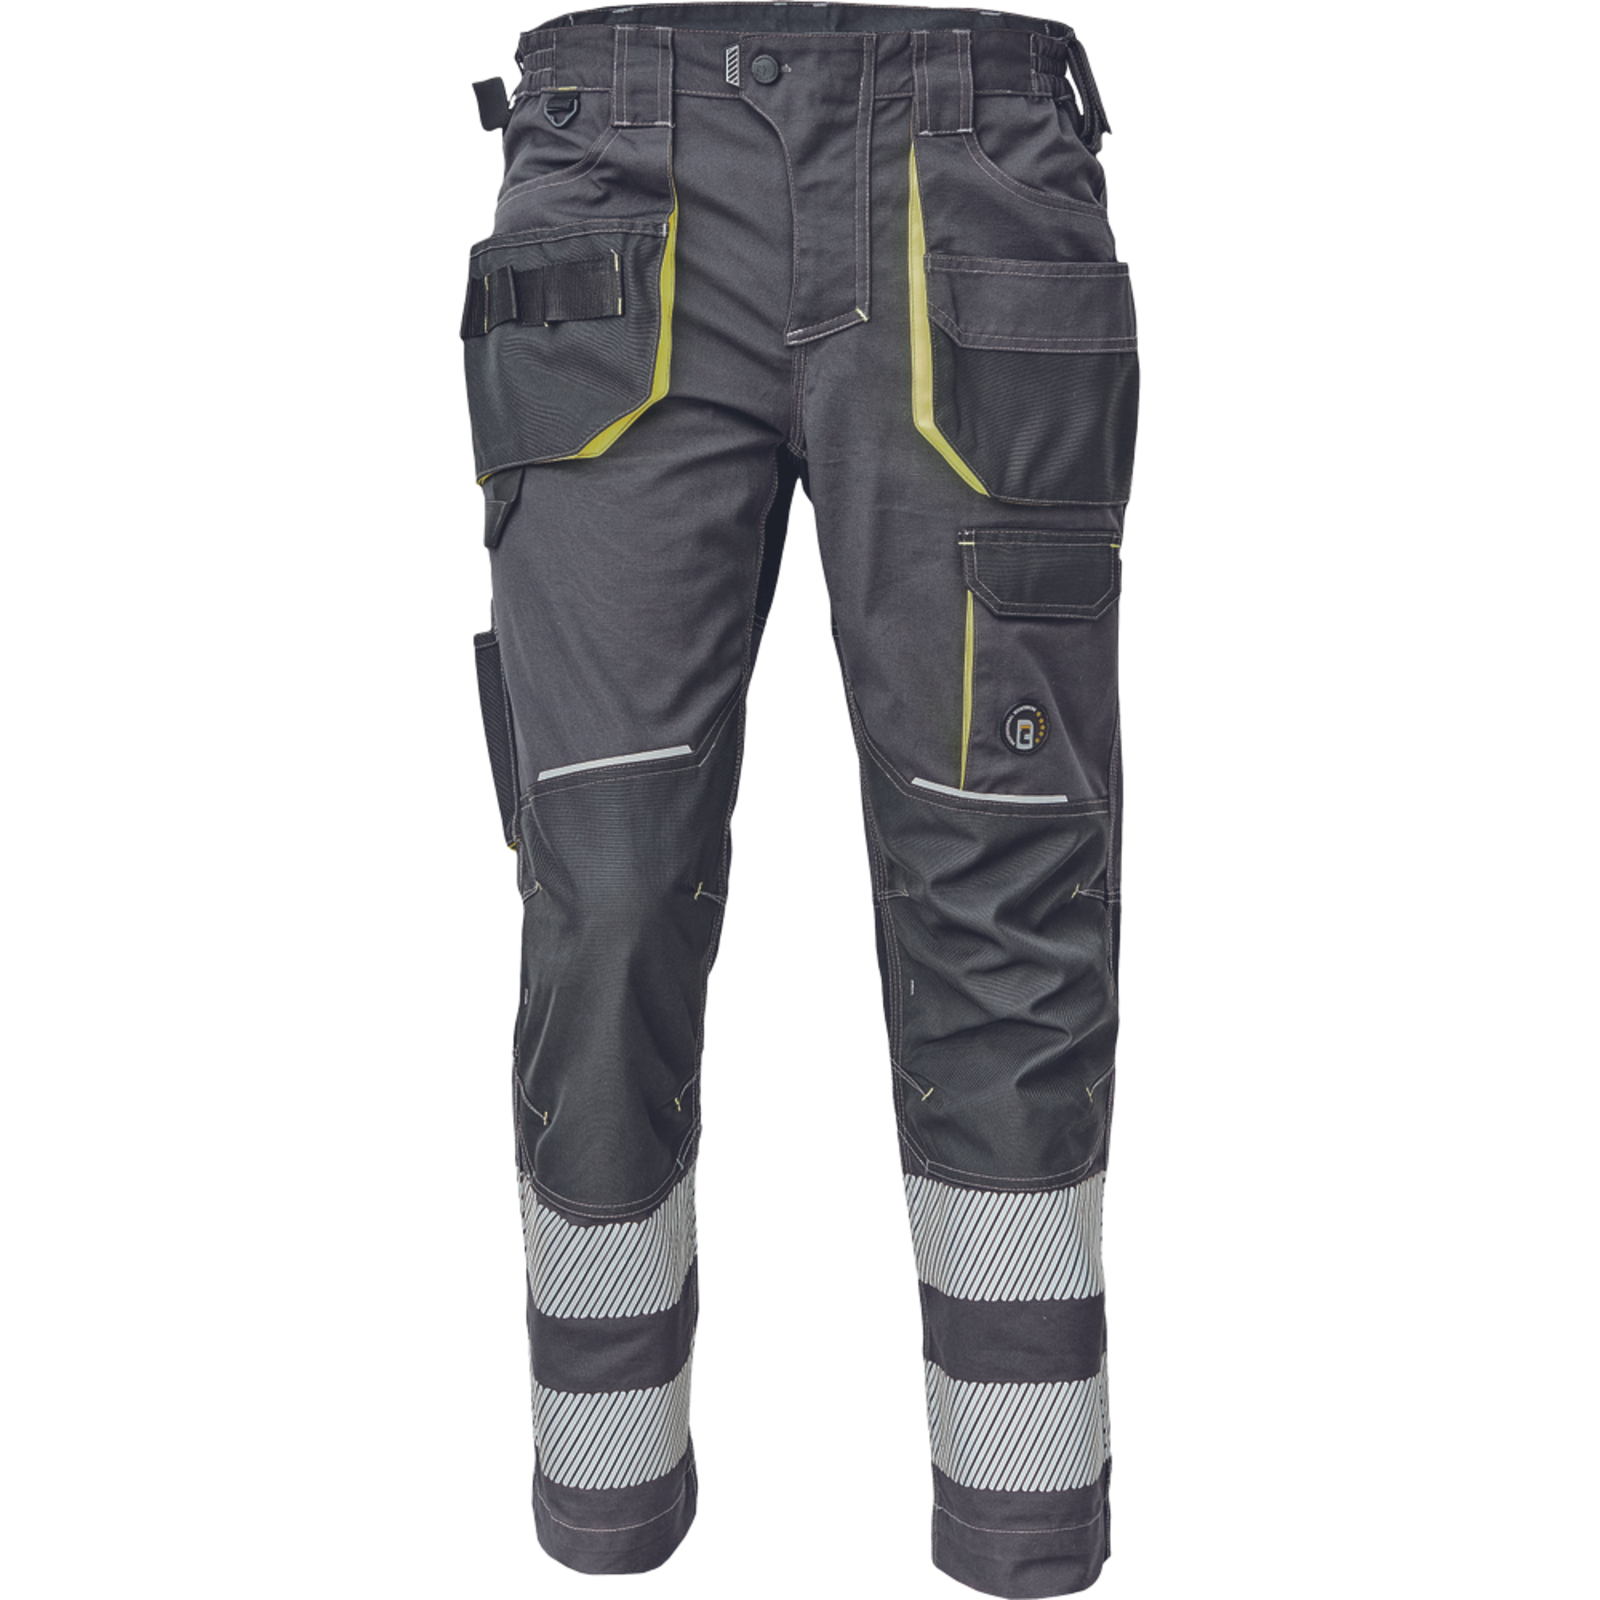 Pracovné nohavice s reflexnými pruhmi Cerva Sheldon RFLX pánske - veľkosť: 64, farba: antracit/žltá